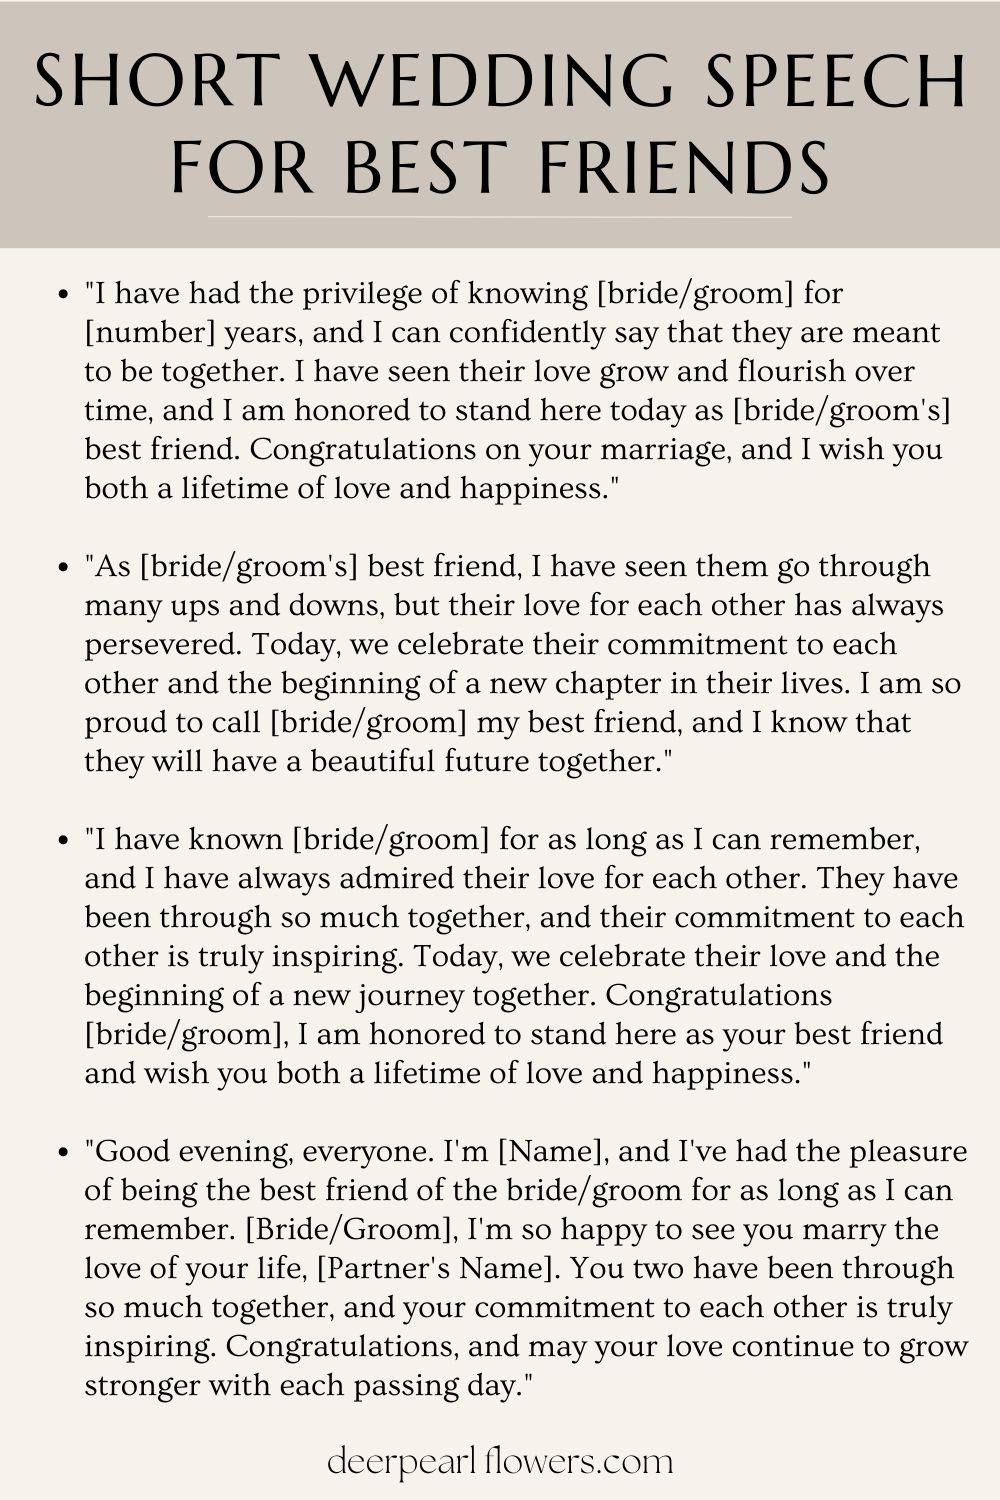 Short Wedding Speech for Best Friends